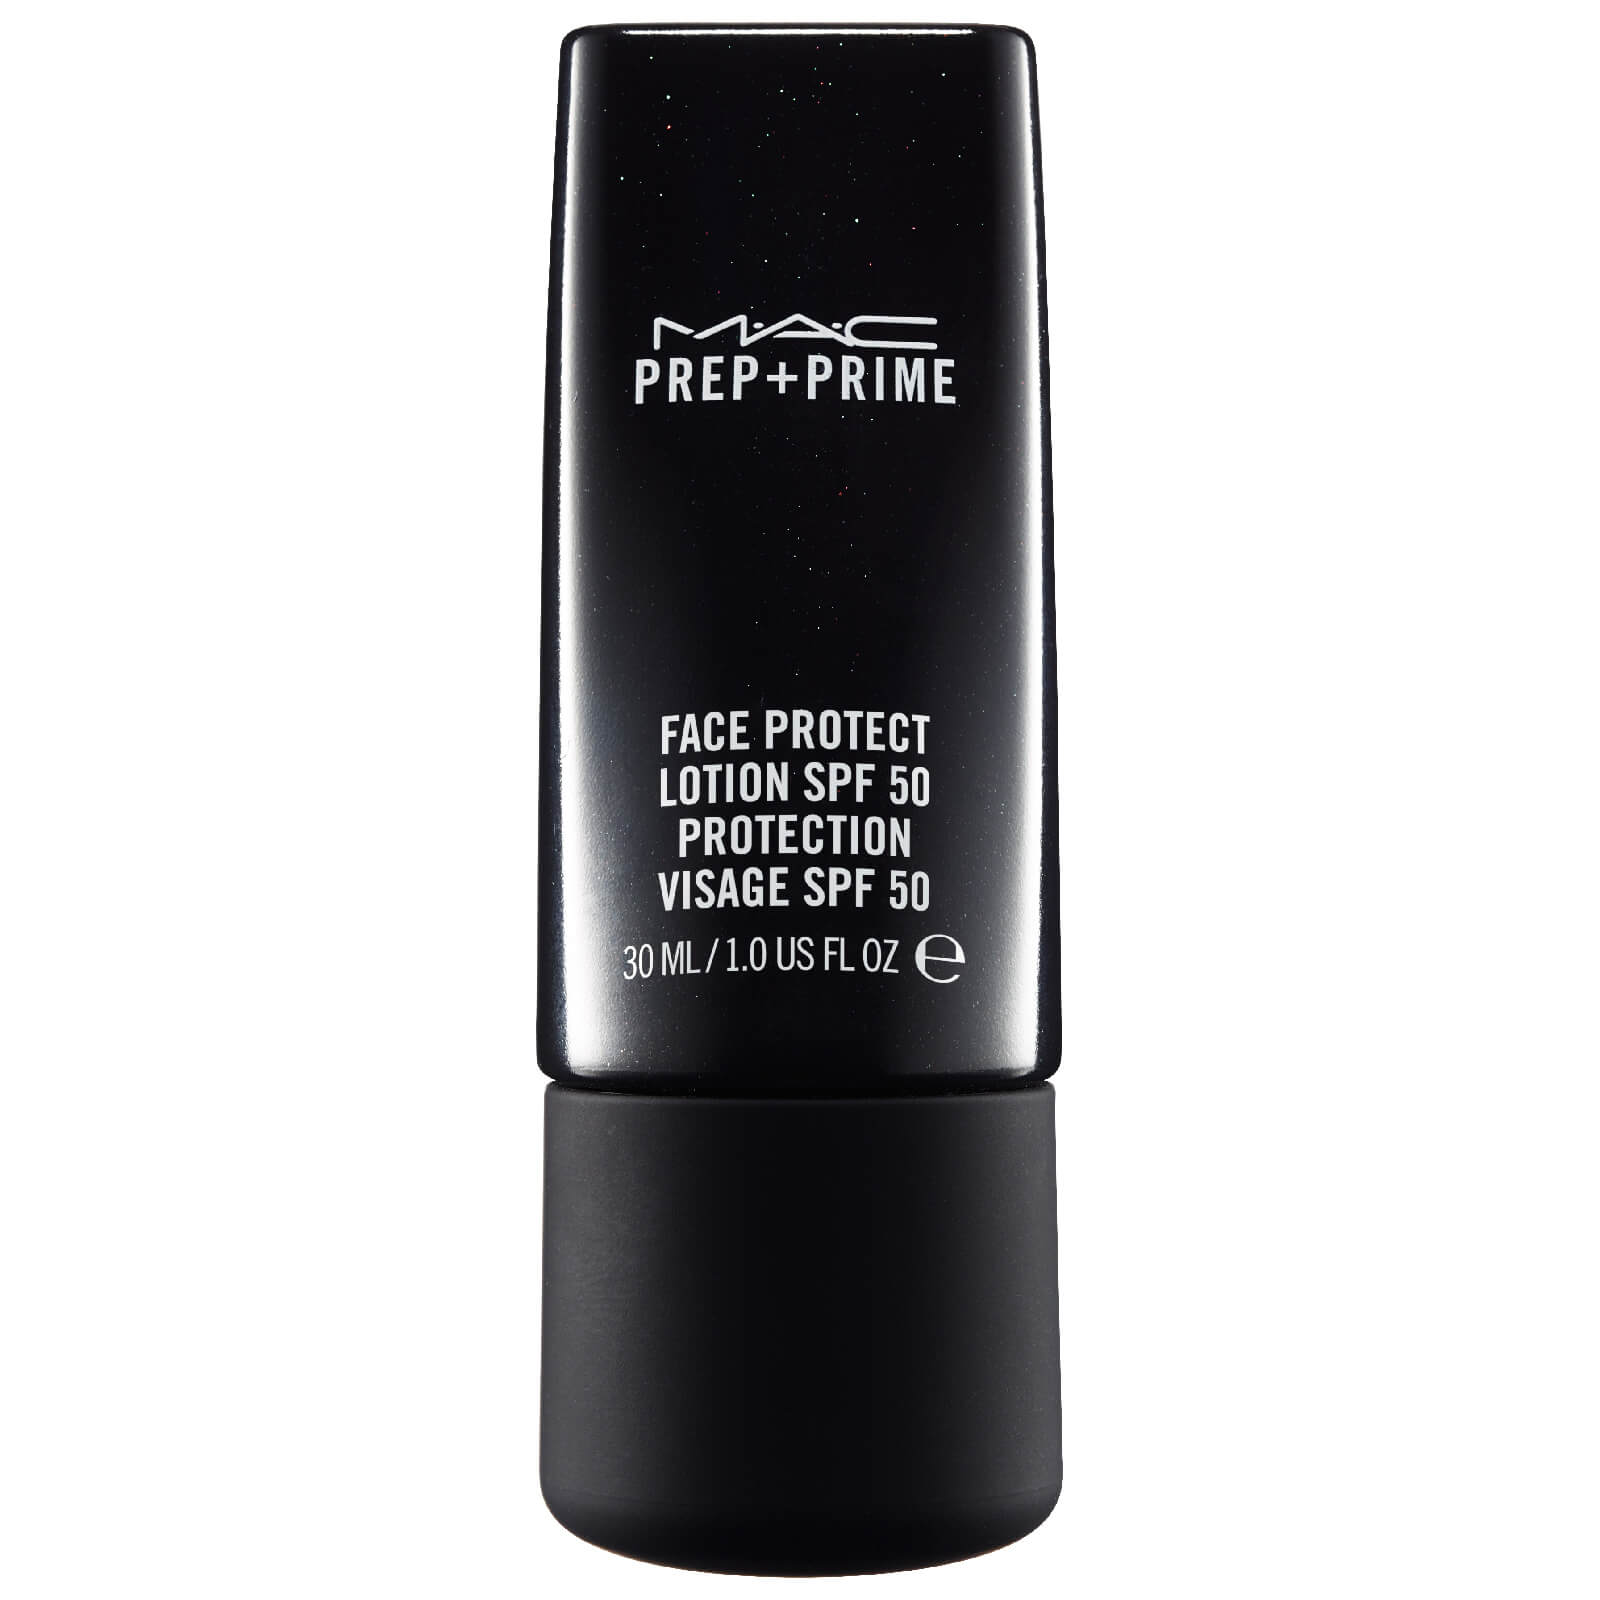 Photos - Sun Skin Care MAC Cosmetics MAC Prep + Prime Face Protect SPF 50 MTX7010000 